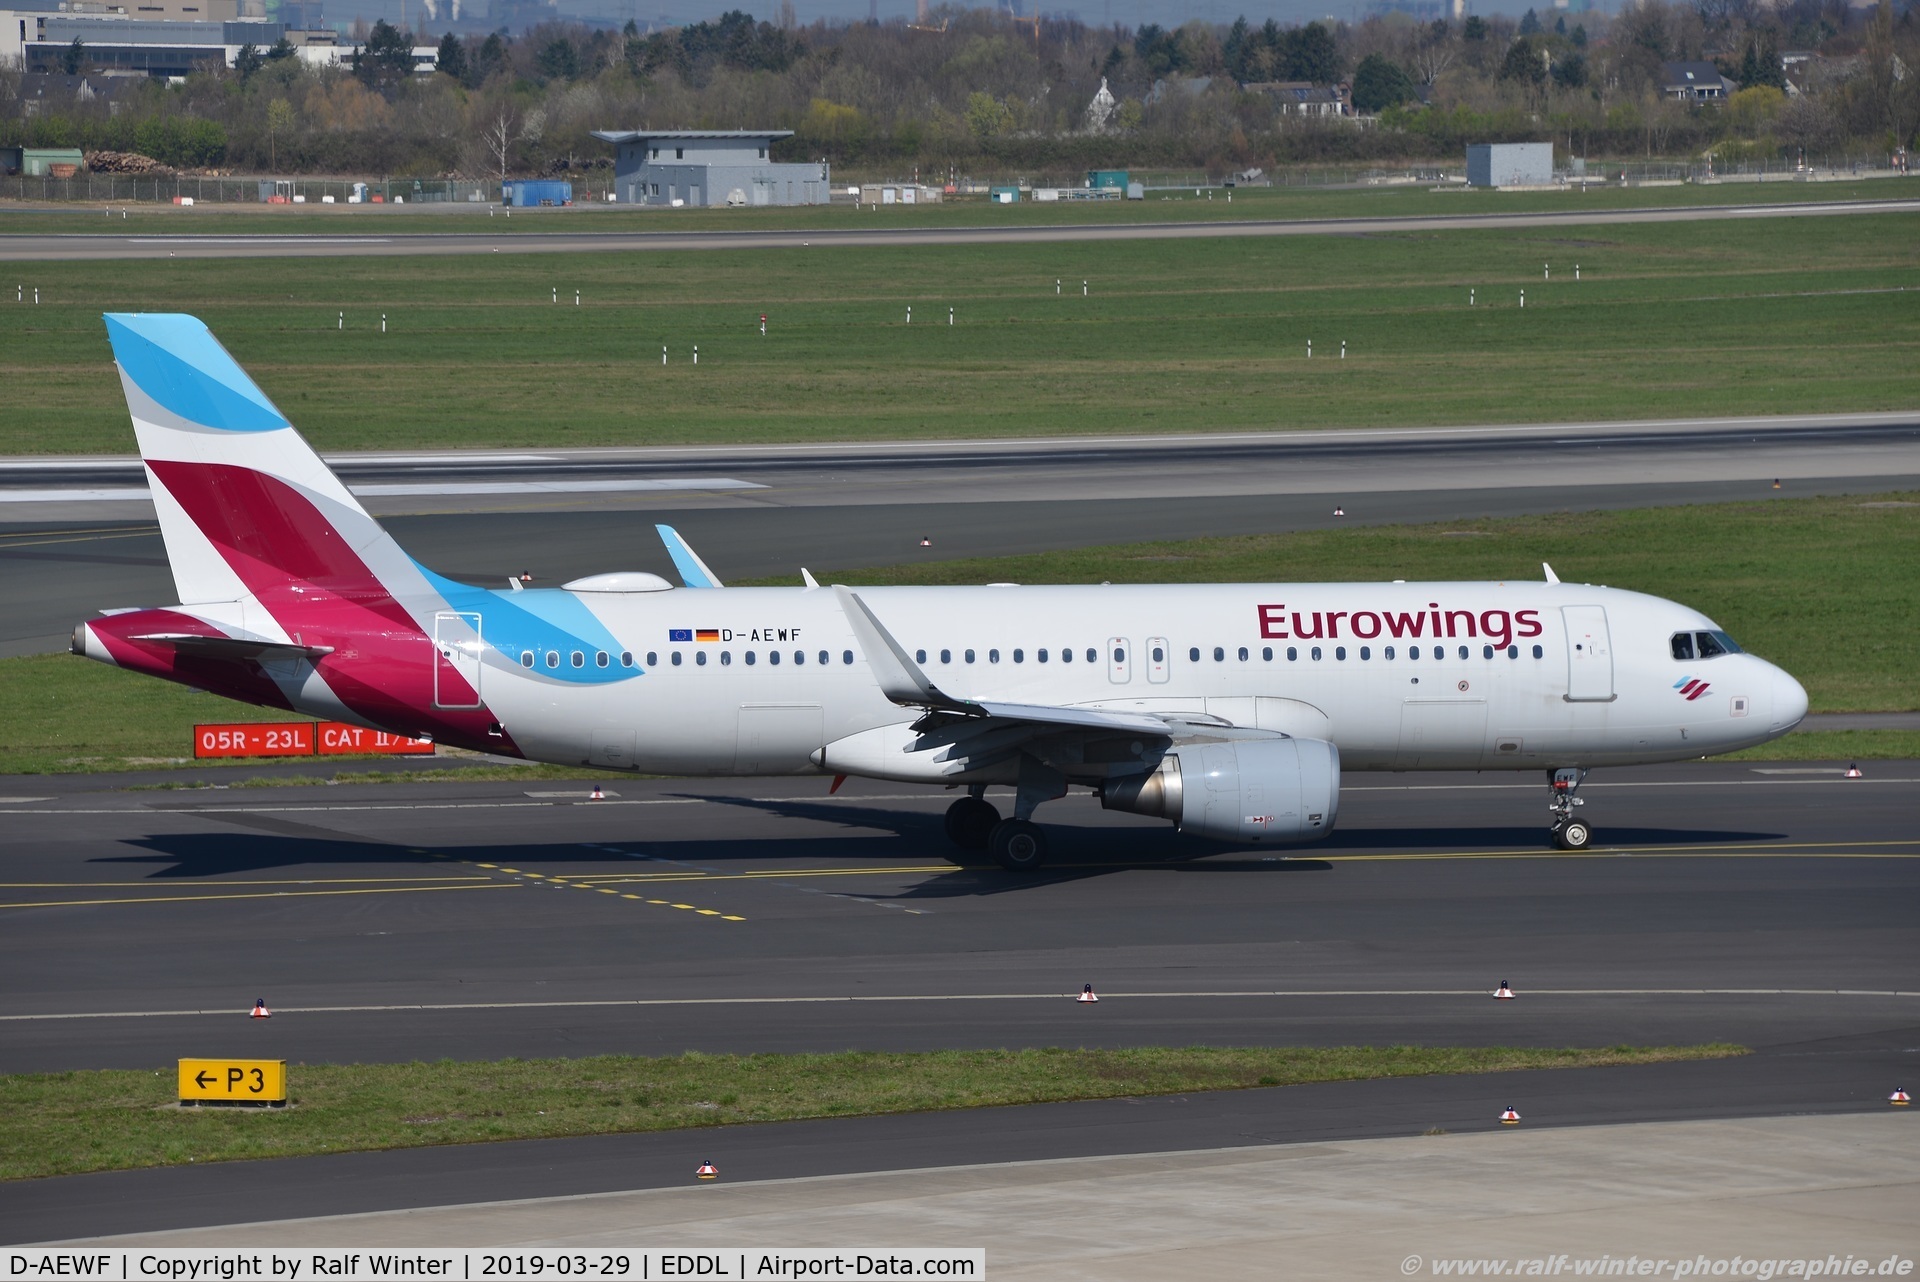 D-AEWF, 2016 Airbus A320-214 C/N 7087, Airbus A320-214(W) - EW EWG Eurowings - 7087 - D-AEWF - 29.03.2019 - DUS